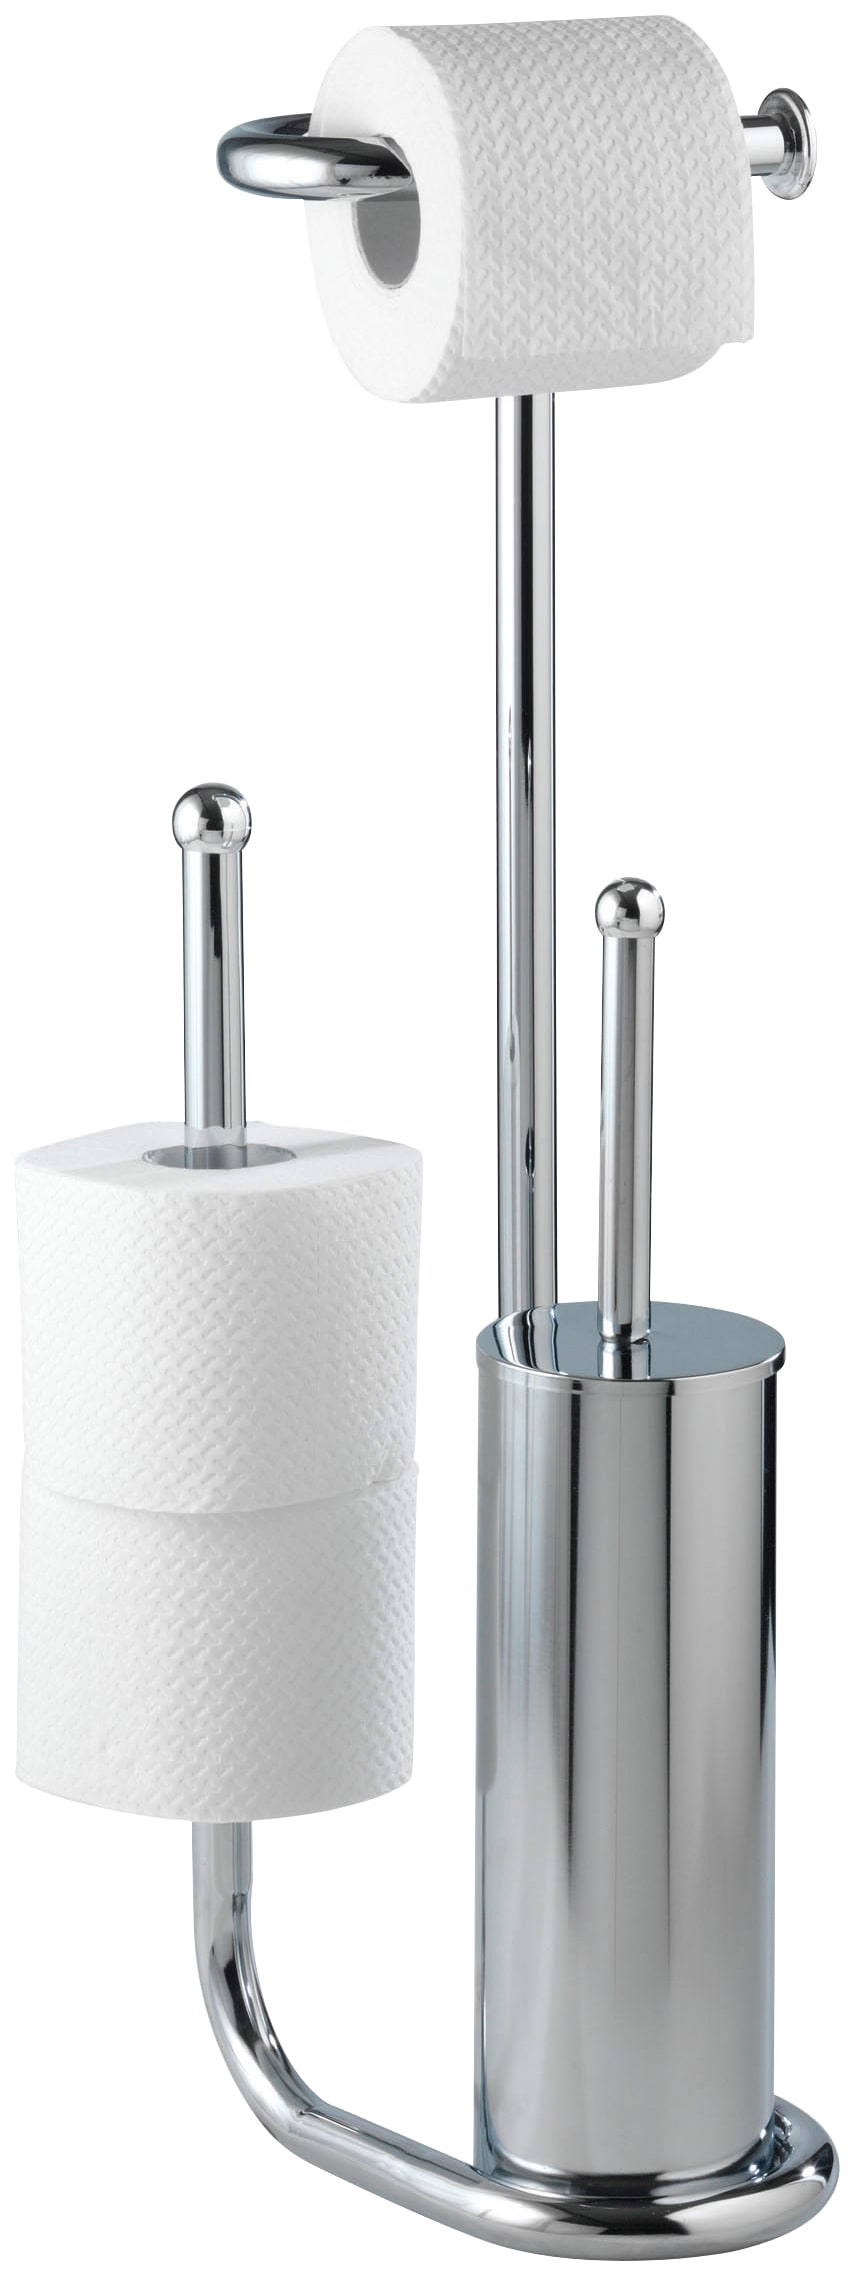 WC-Garnitur »Universalo«, aus Edelstahl, integrierter Toilettenpapierhalter und...